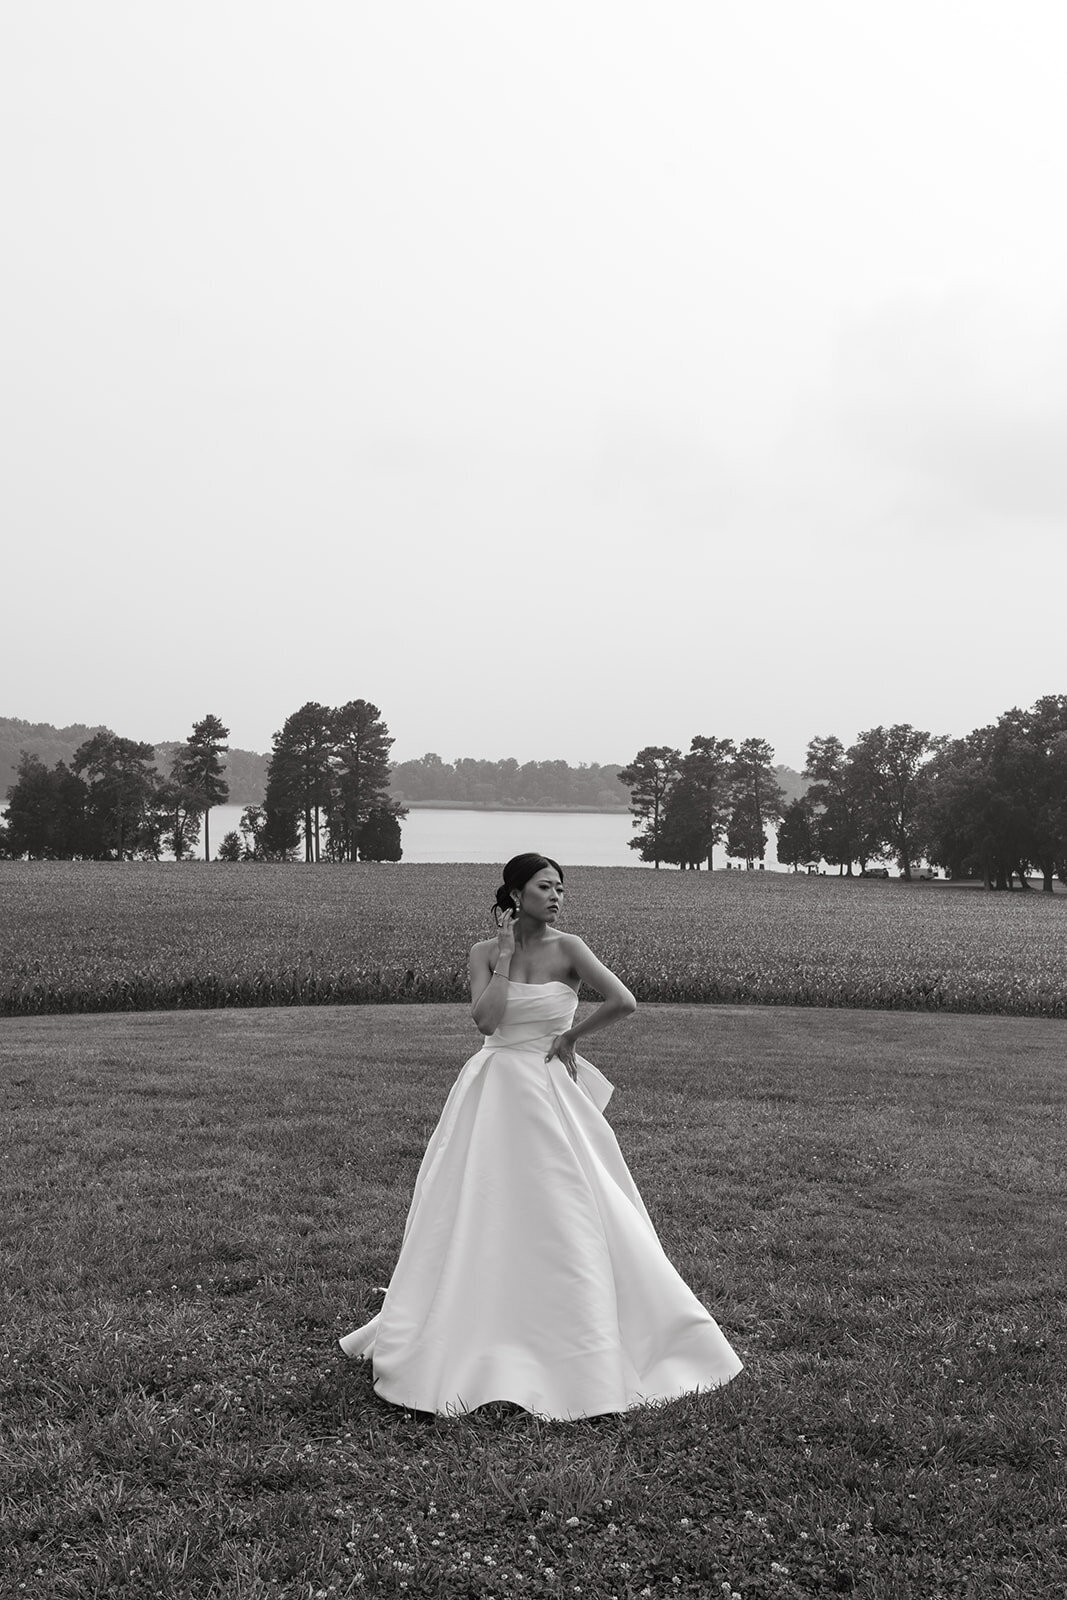 Bride posing in a white dress in a field